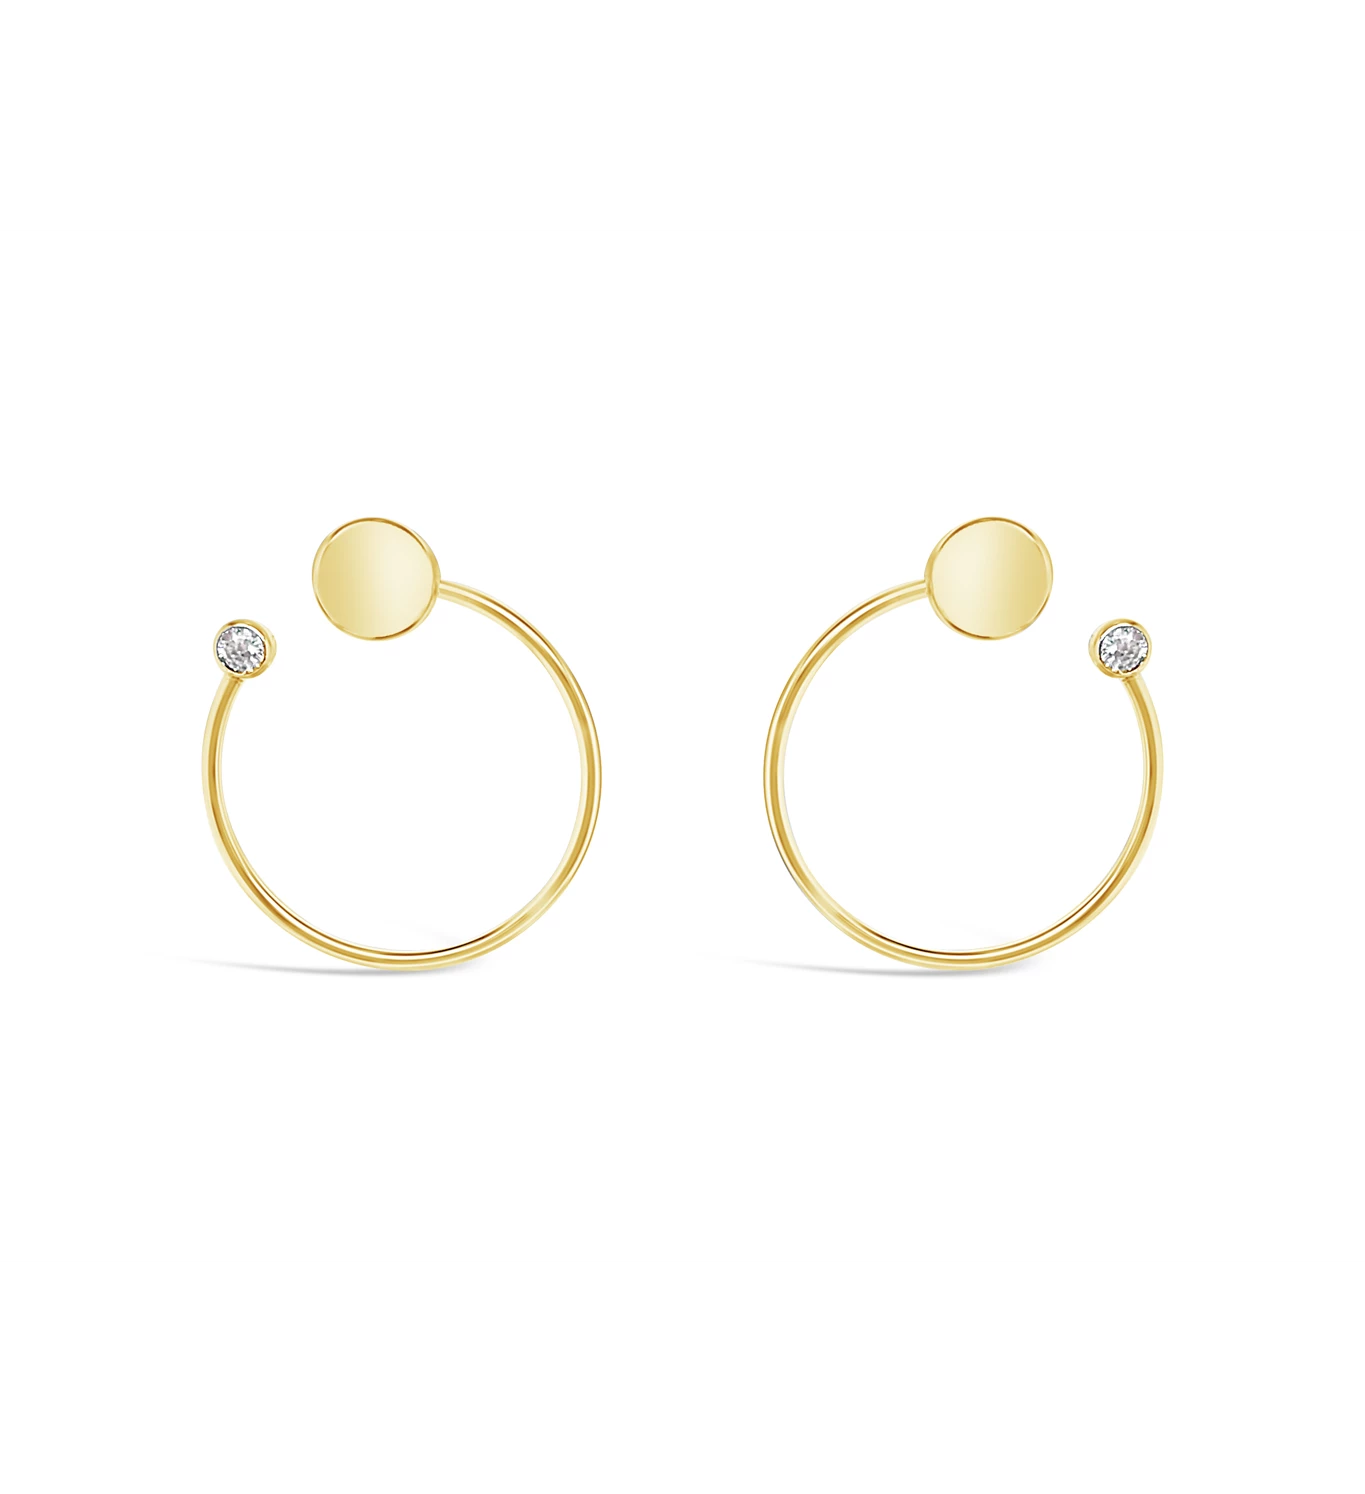 Geometric Spheres gold earrings